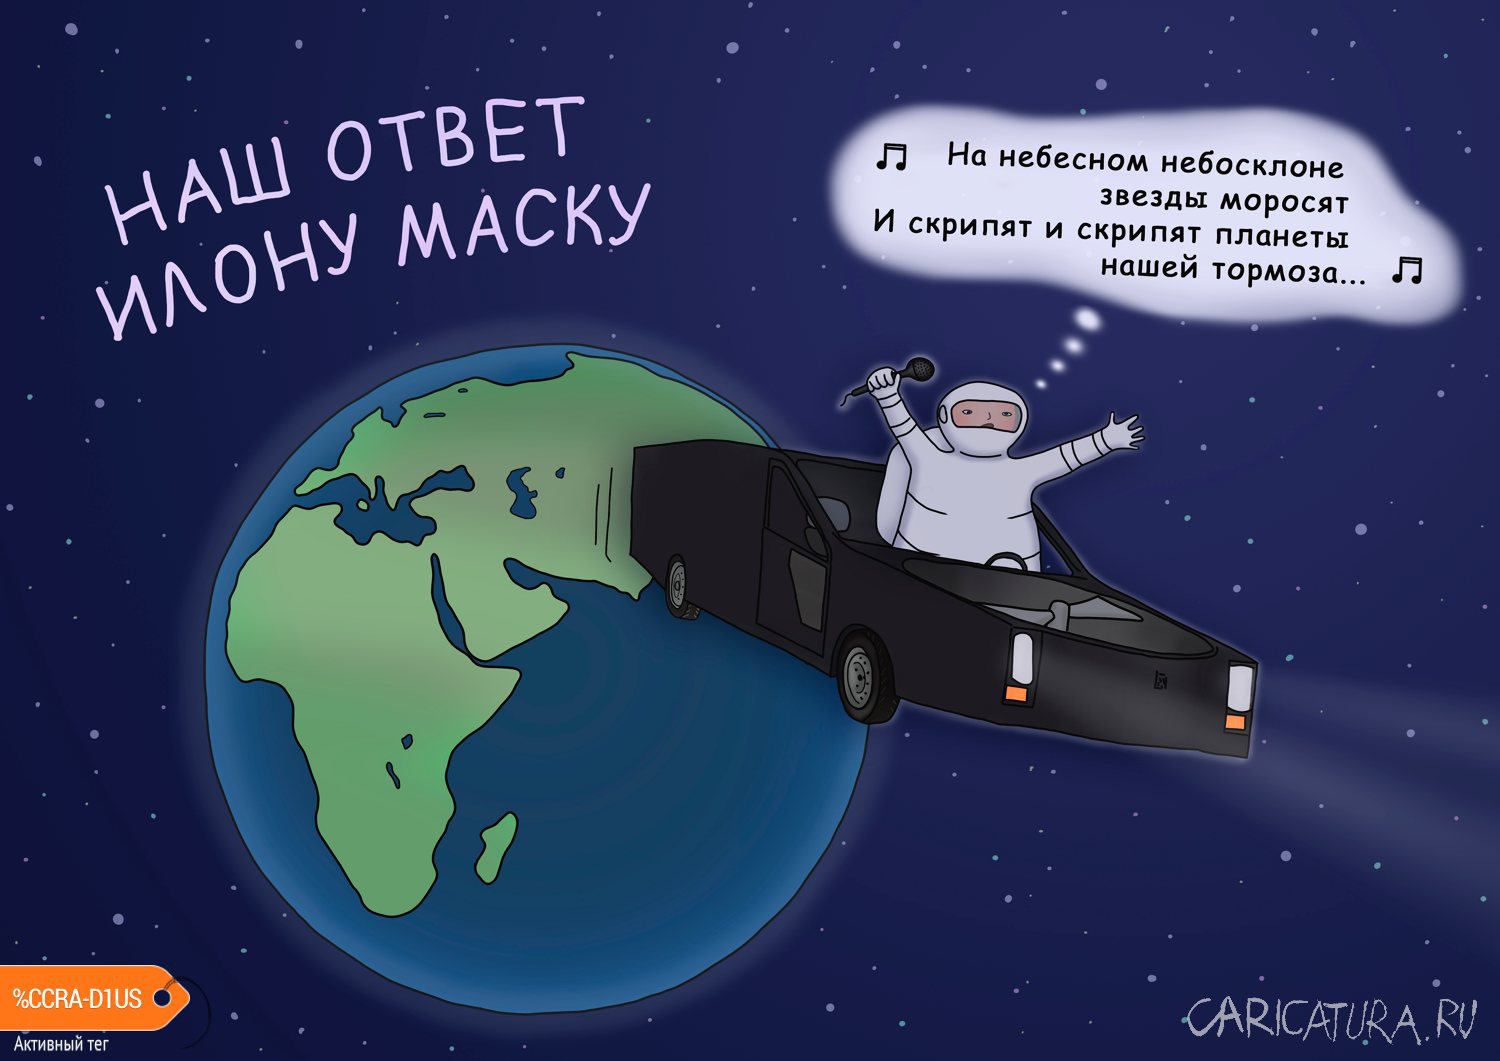 Карикатура "Наш ответ Илону Маску", Георгий Урушадзе